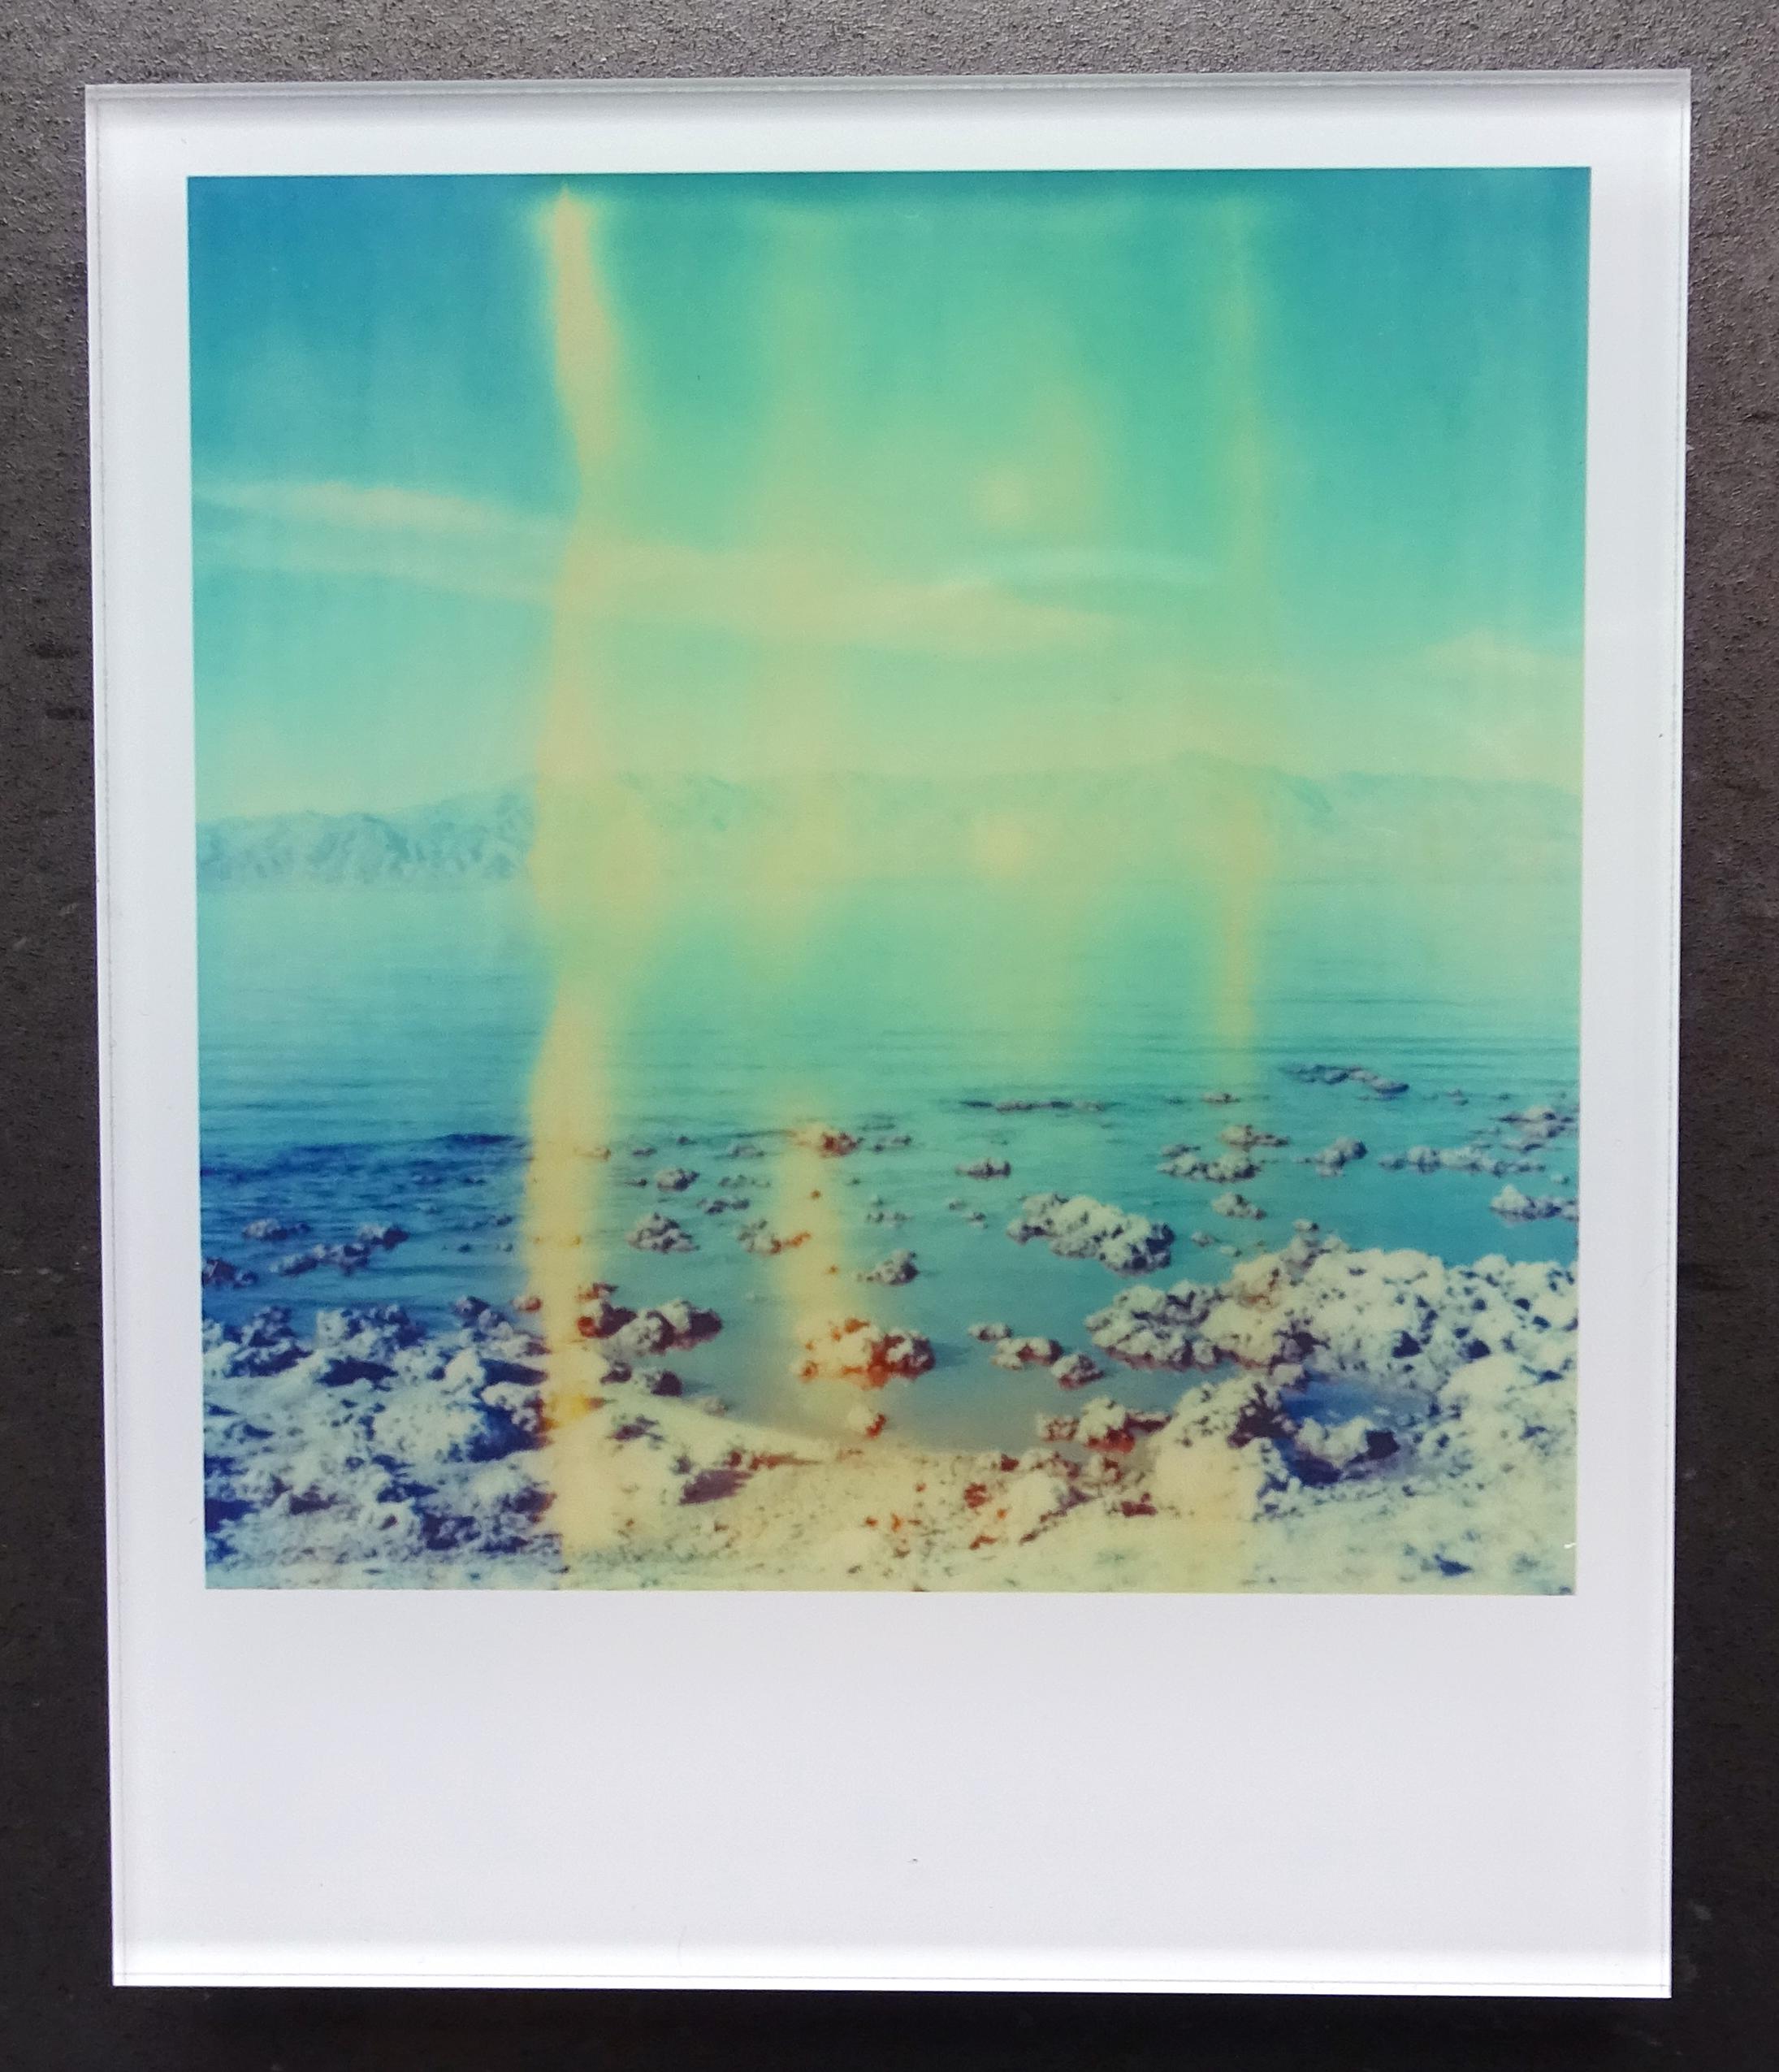 Die Minis von Stefanie Schneider
Salt'n Sea (Kalifornische Badlands) - 2010

Verso signiert und Signaturmarke.
Digitale Lambda-Farbfotografien auf der Grundlage eines Polaroids.
Eingeklemmt zwischen Plexiglas (Dicke 0,7 cm)

Offene Editionen in